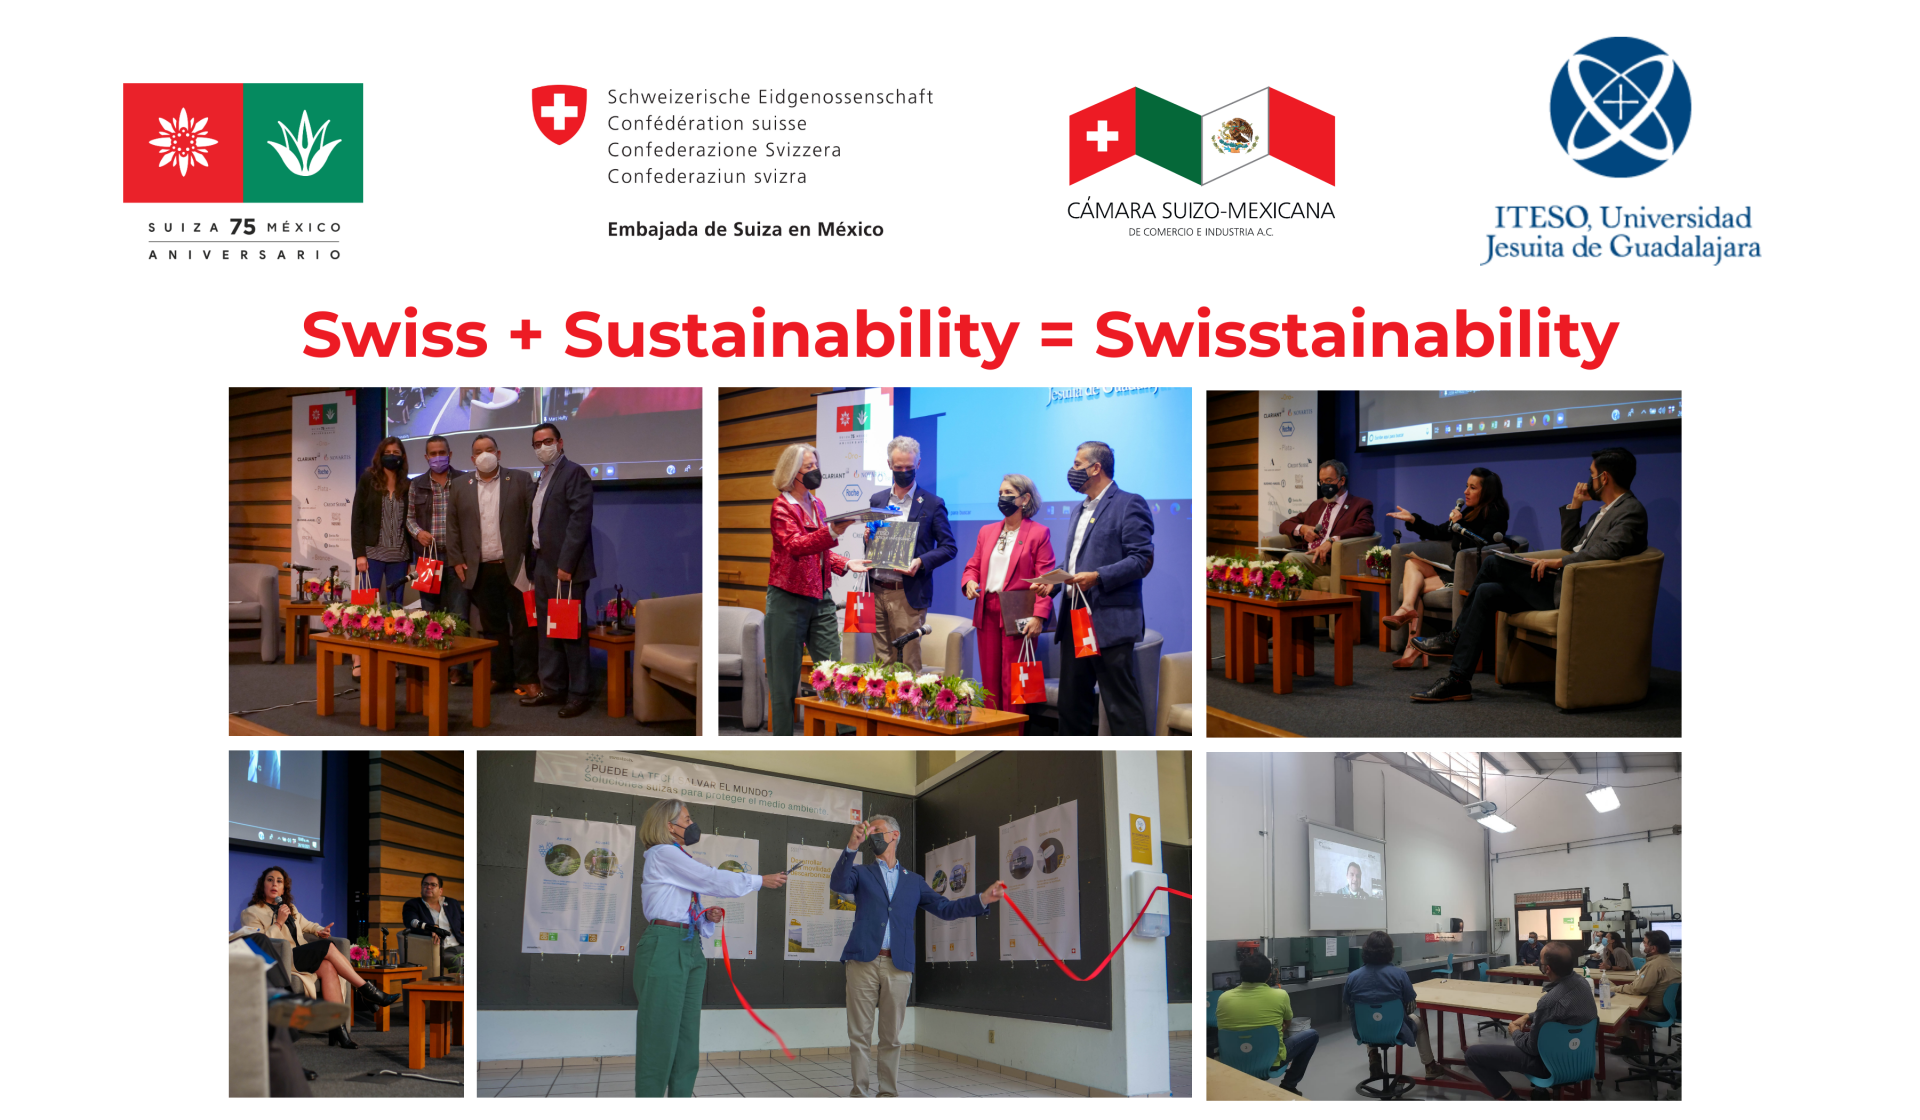 “Swiss + Sustainability = Swisstainability” Forum